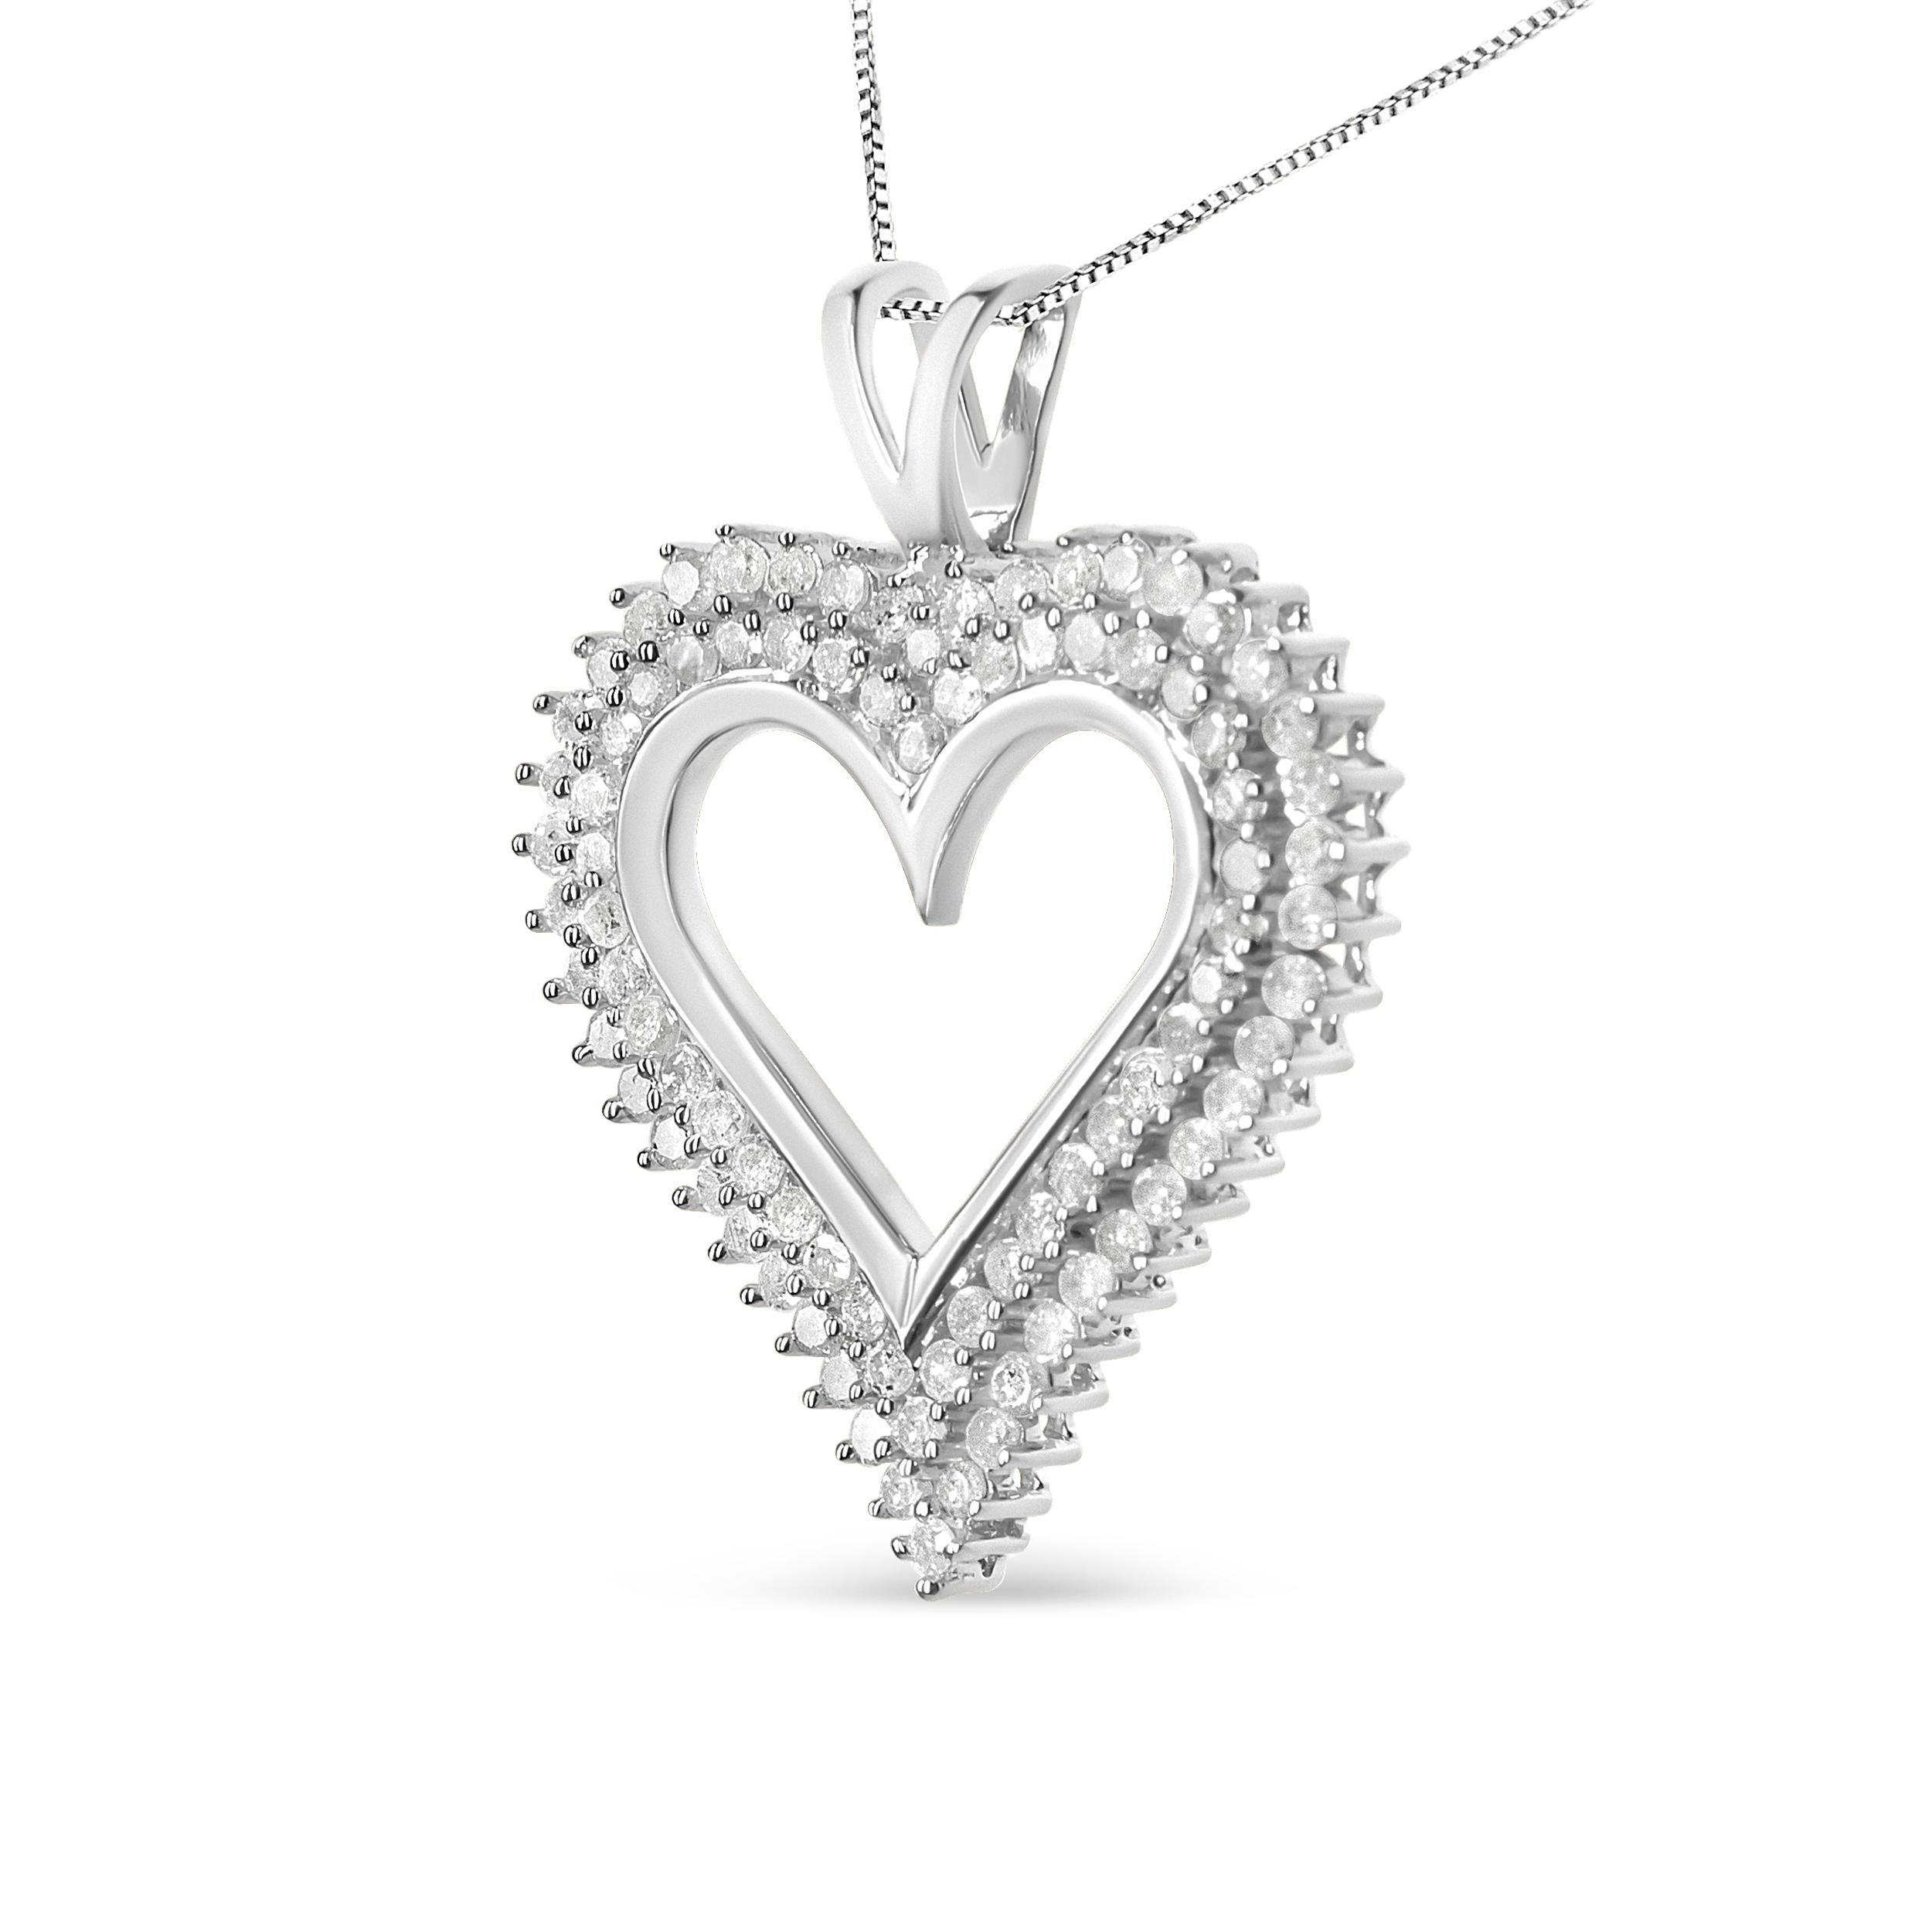 Célébrez la personne que vous aimez avec ce magnifique pendentif en forme de cœur en diamant. Ce collier de diamants présente deux rangées de diamants ronds sertis en épingle le long du bord de ce cœur ouvert en argent sterling 925, avec une chaîne